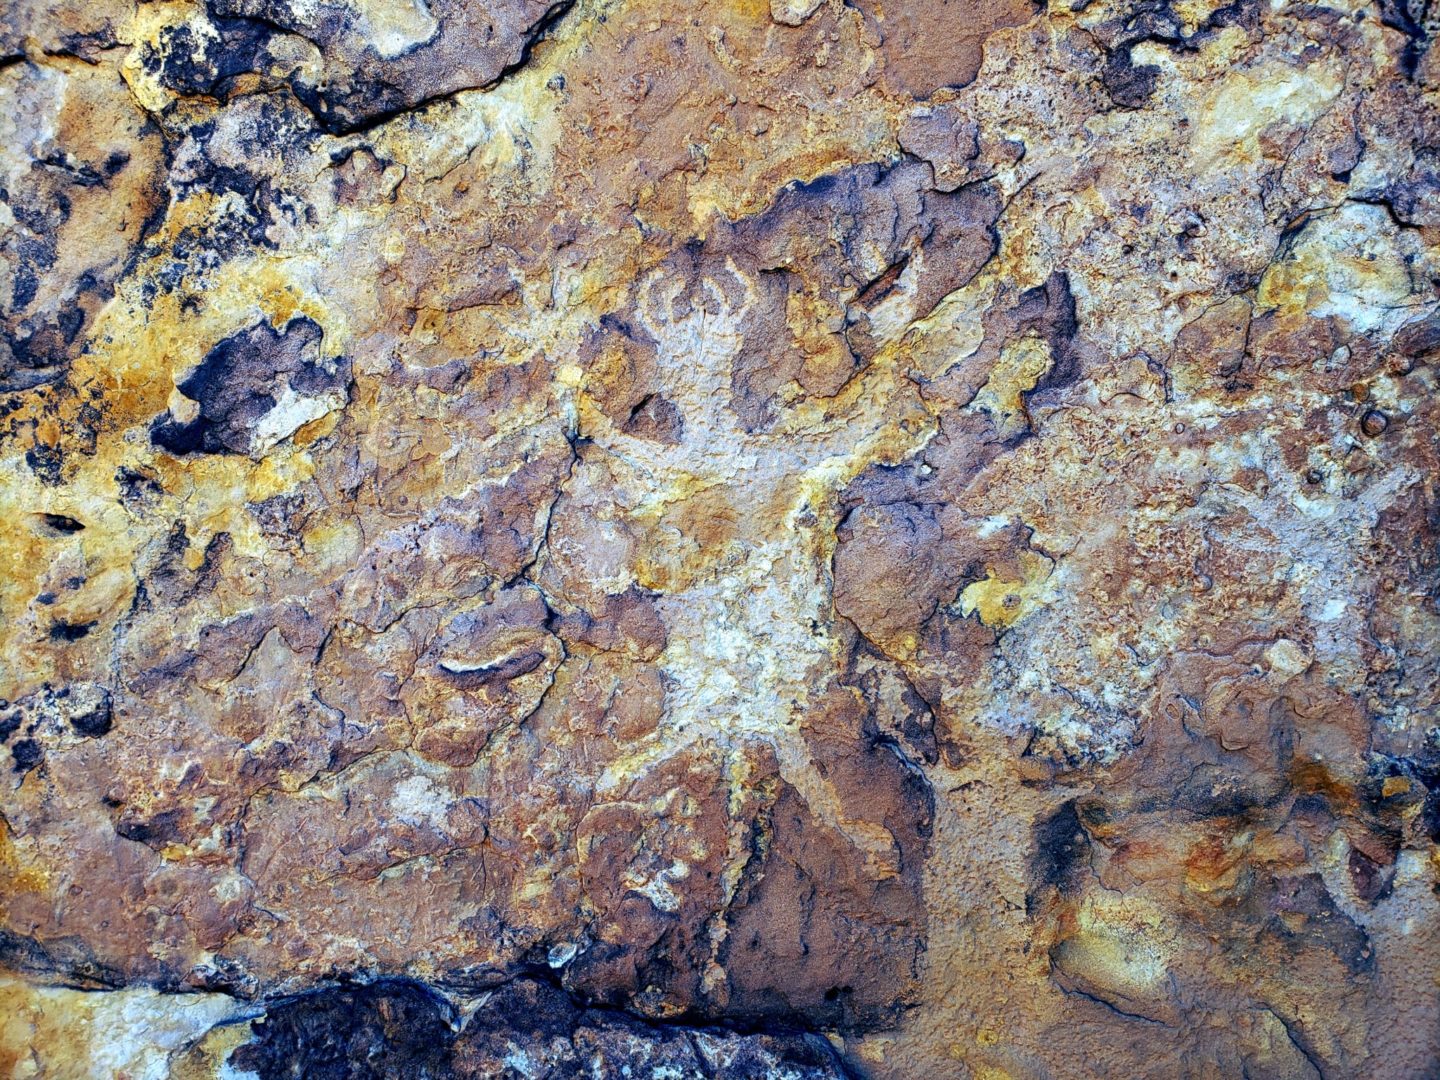 A petroglyph among the rocks